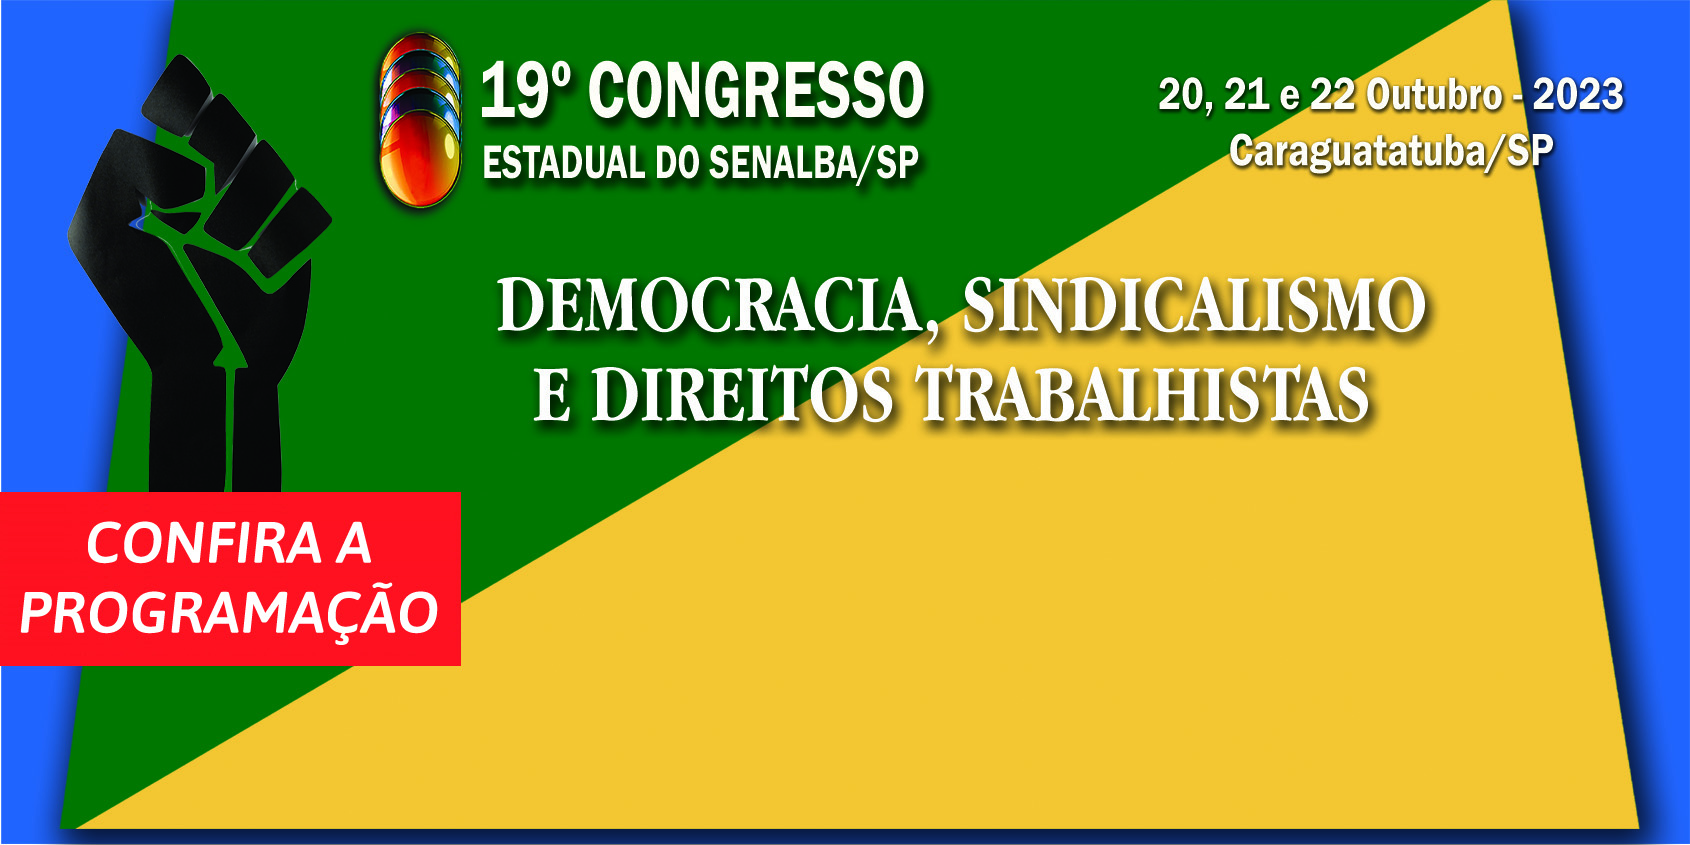 Novo recorde de inscrições para o 19° Congresso Estadual do Senalba/SP